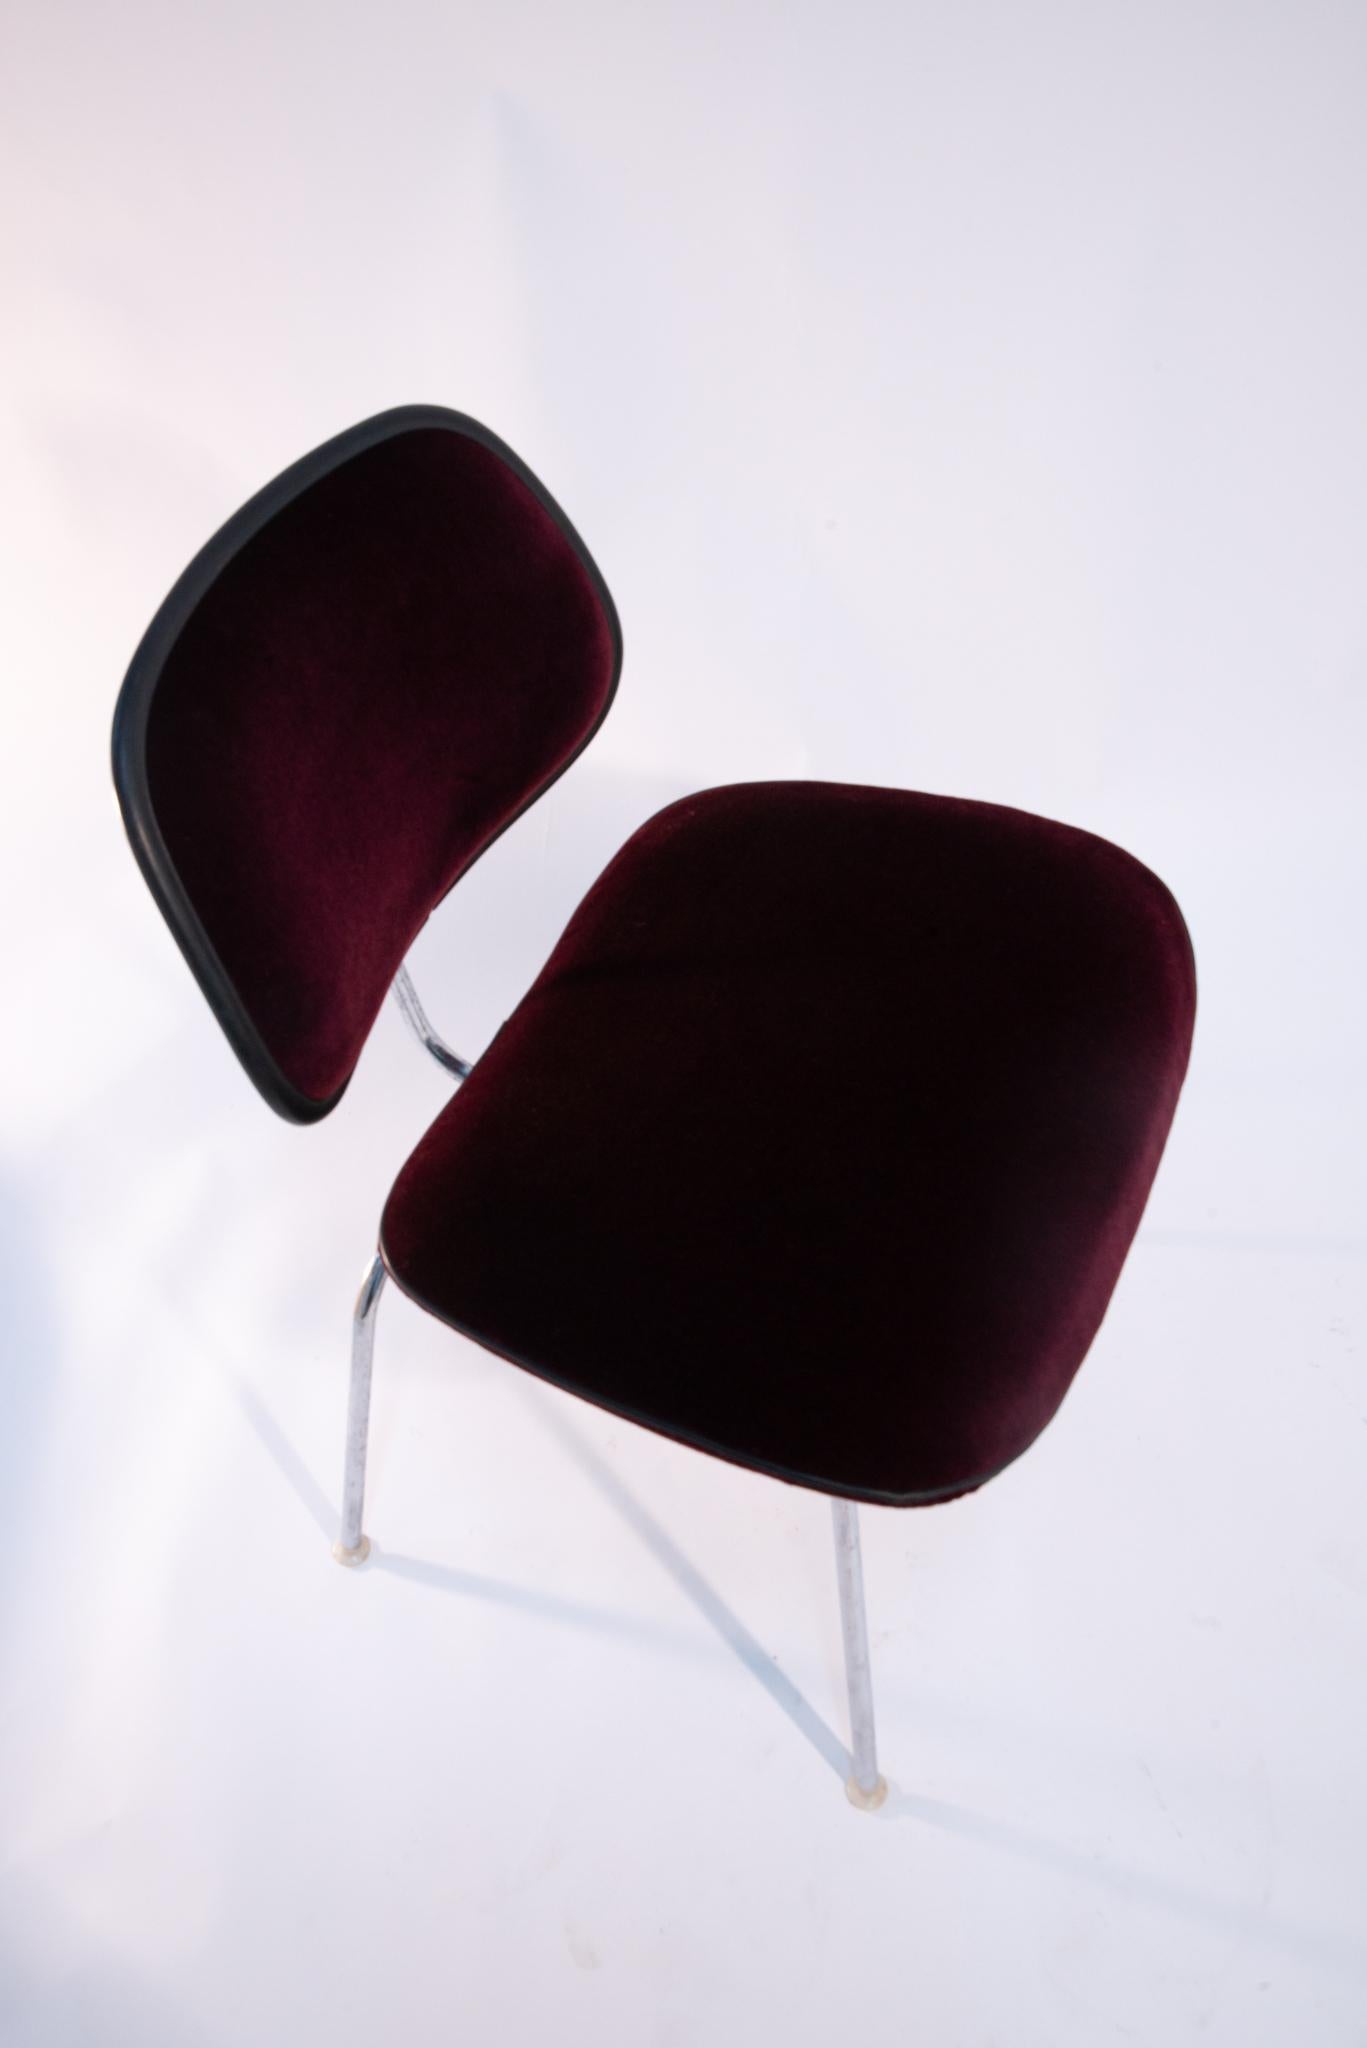 Diese originalen EC-127 gepolsterten DCM Chairs von Eames für Herman Miller wurden von einem Polstermeister zu neuem Leben erweckt. Diese kultigen Esszimmerstühle wurden 1969 entwickelt und nur 10 Jahre lang produziert. Sie sind mit bordeauxfarbenem